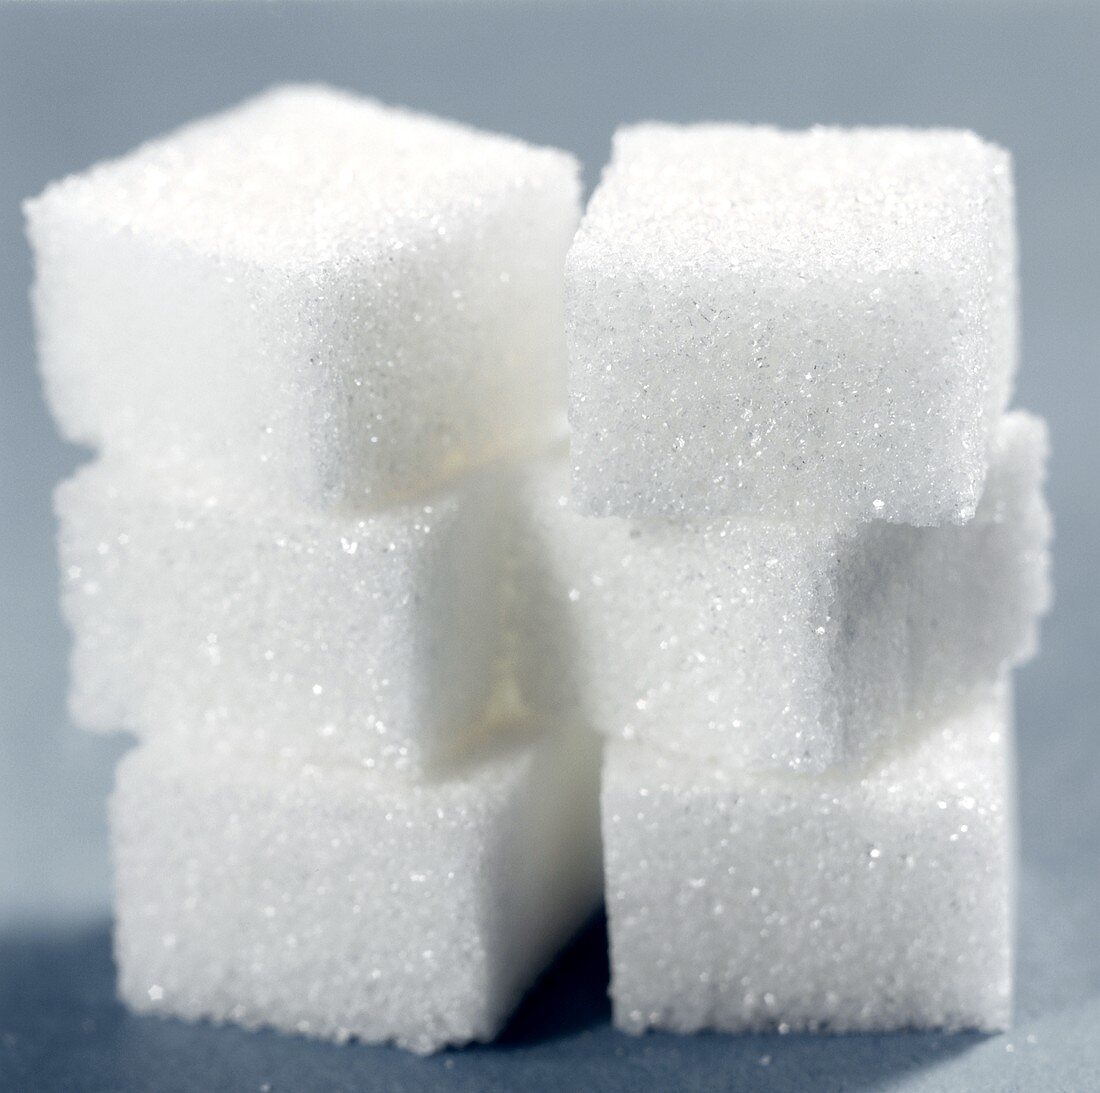 White Sugar Cubes